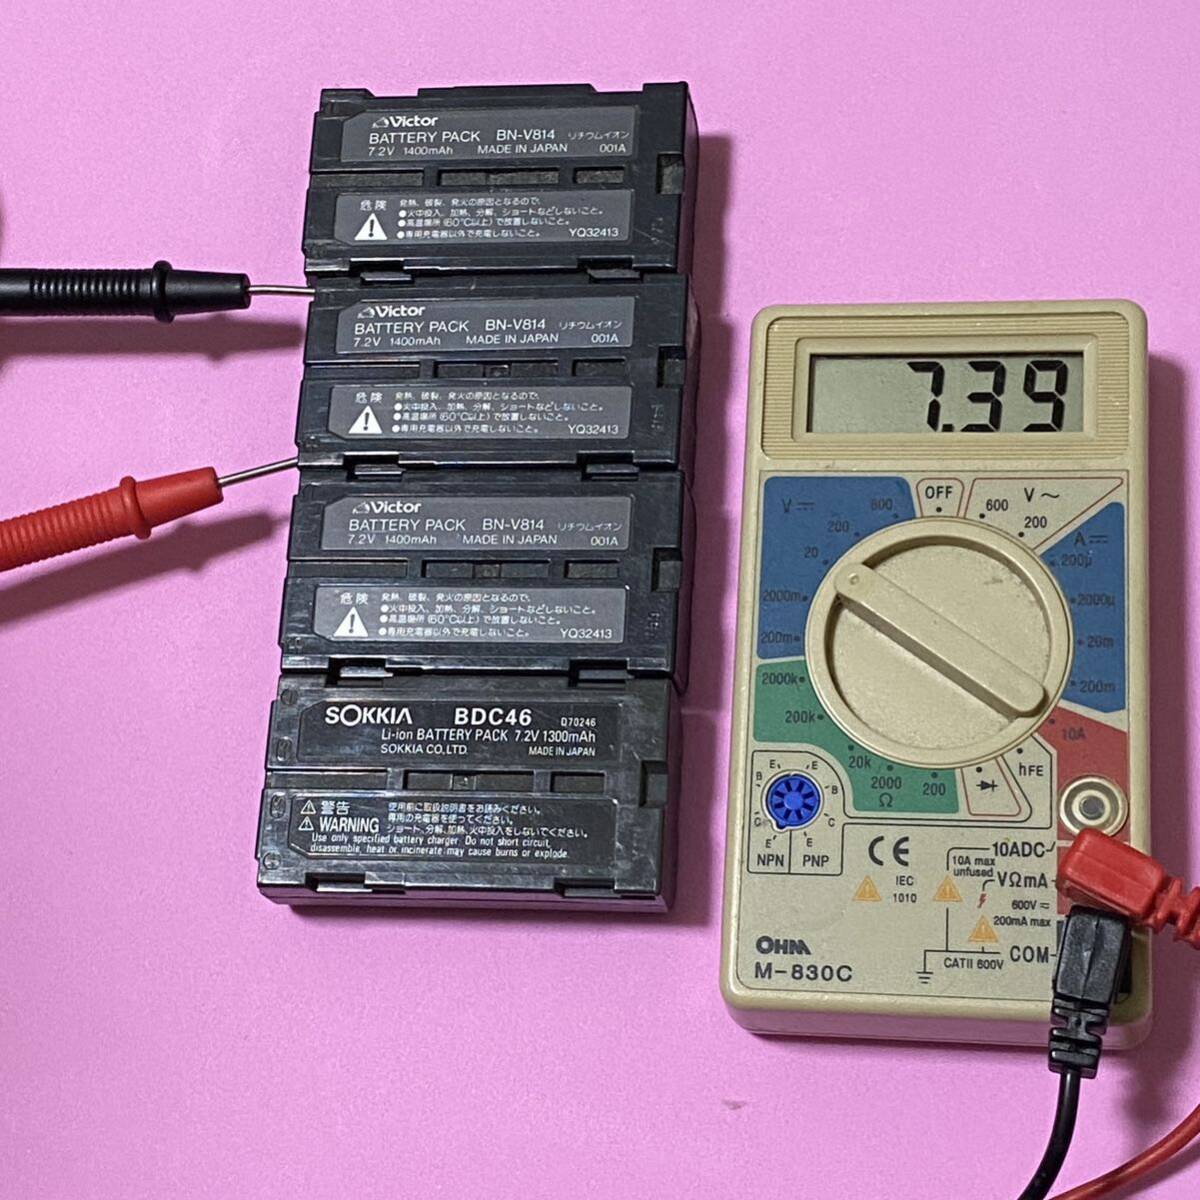 ソキアBDC46x1個、互換バッテリー3個、電圧確認済、ジャンク_画像7